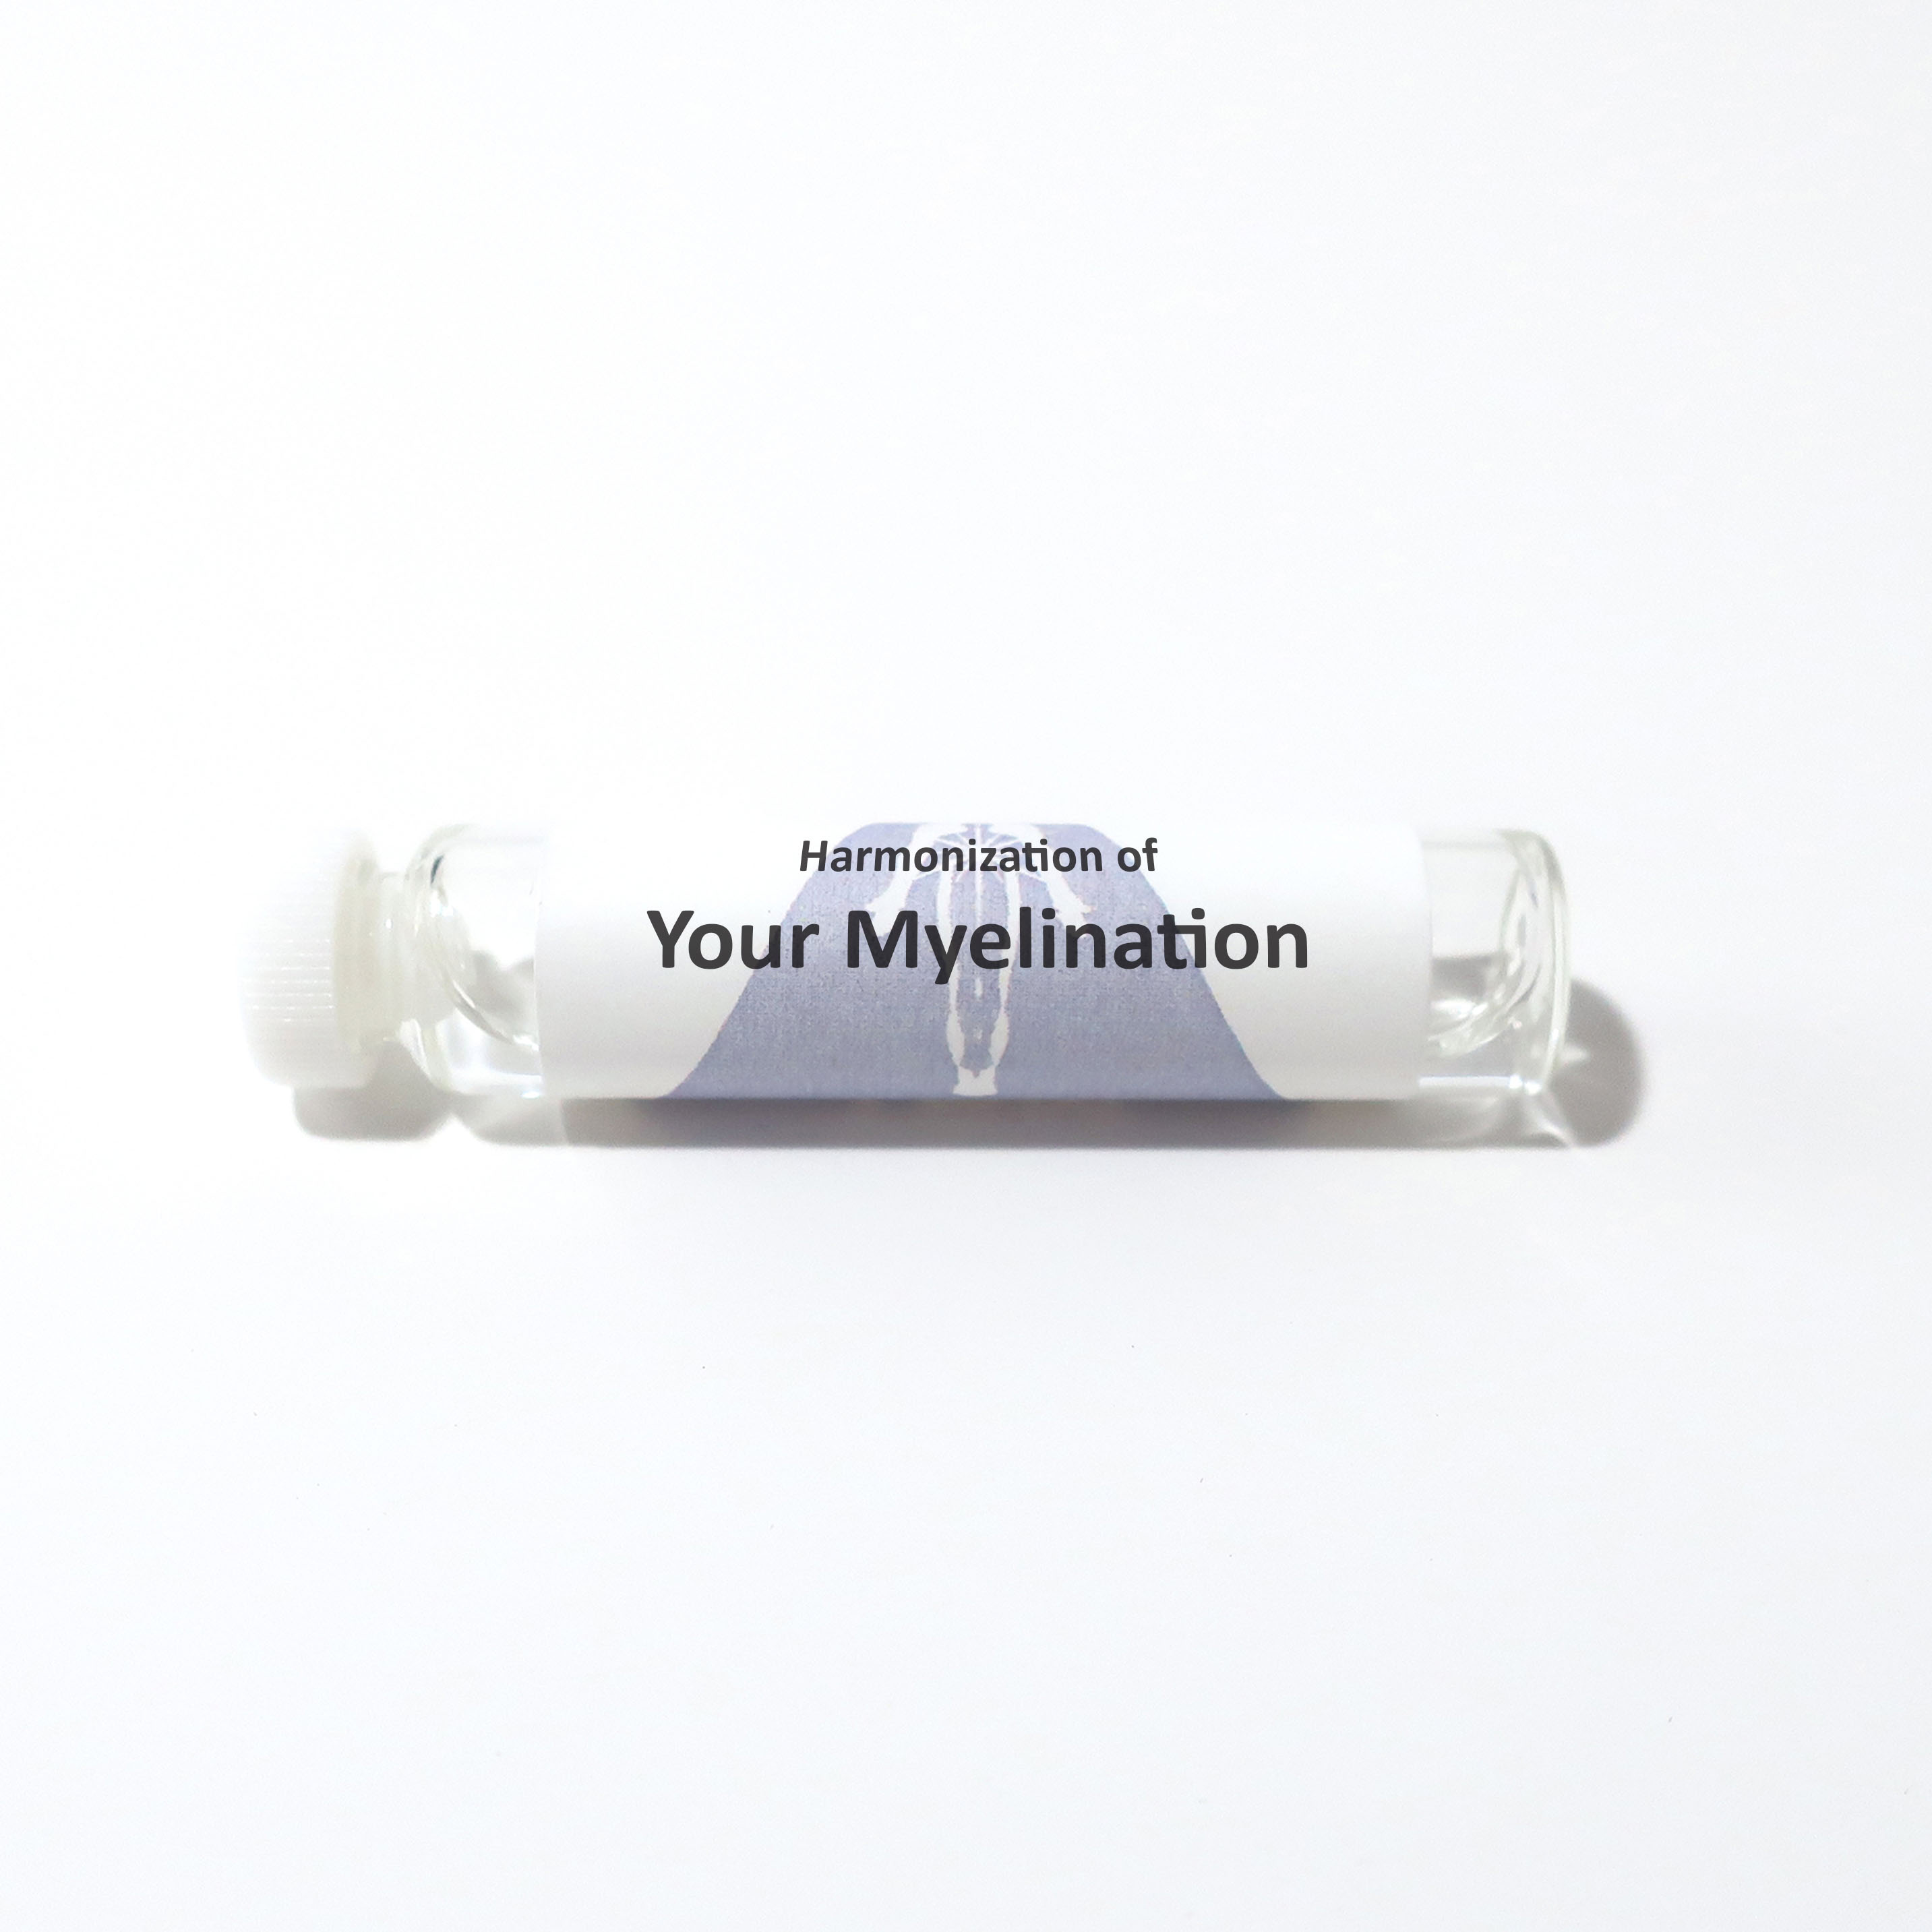 Your Myelination